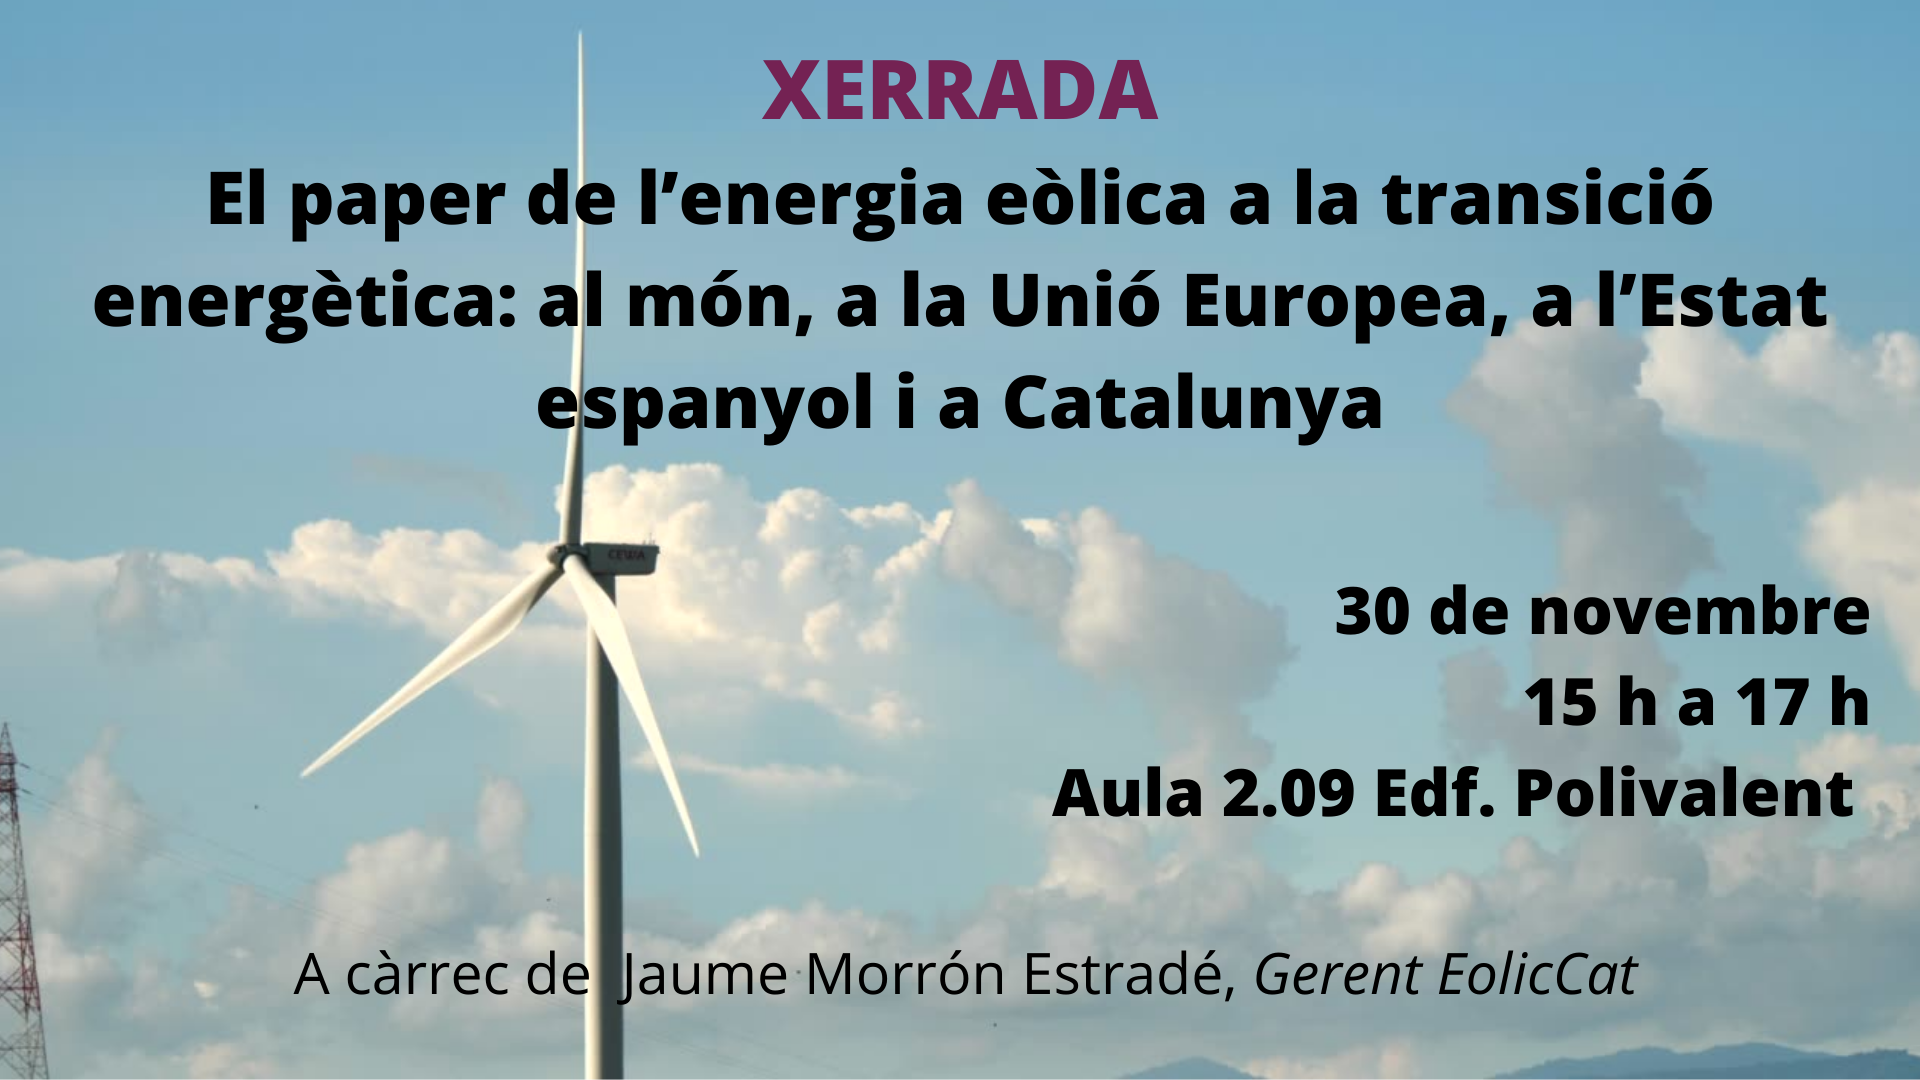 El paper de l'energia eòlica a la transició energètica: al món, a la Unió Europea, a l'Estat espanyol i a Catalunya